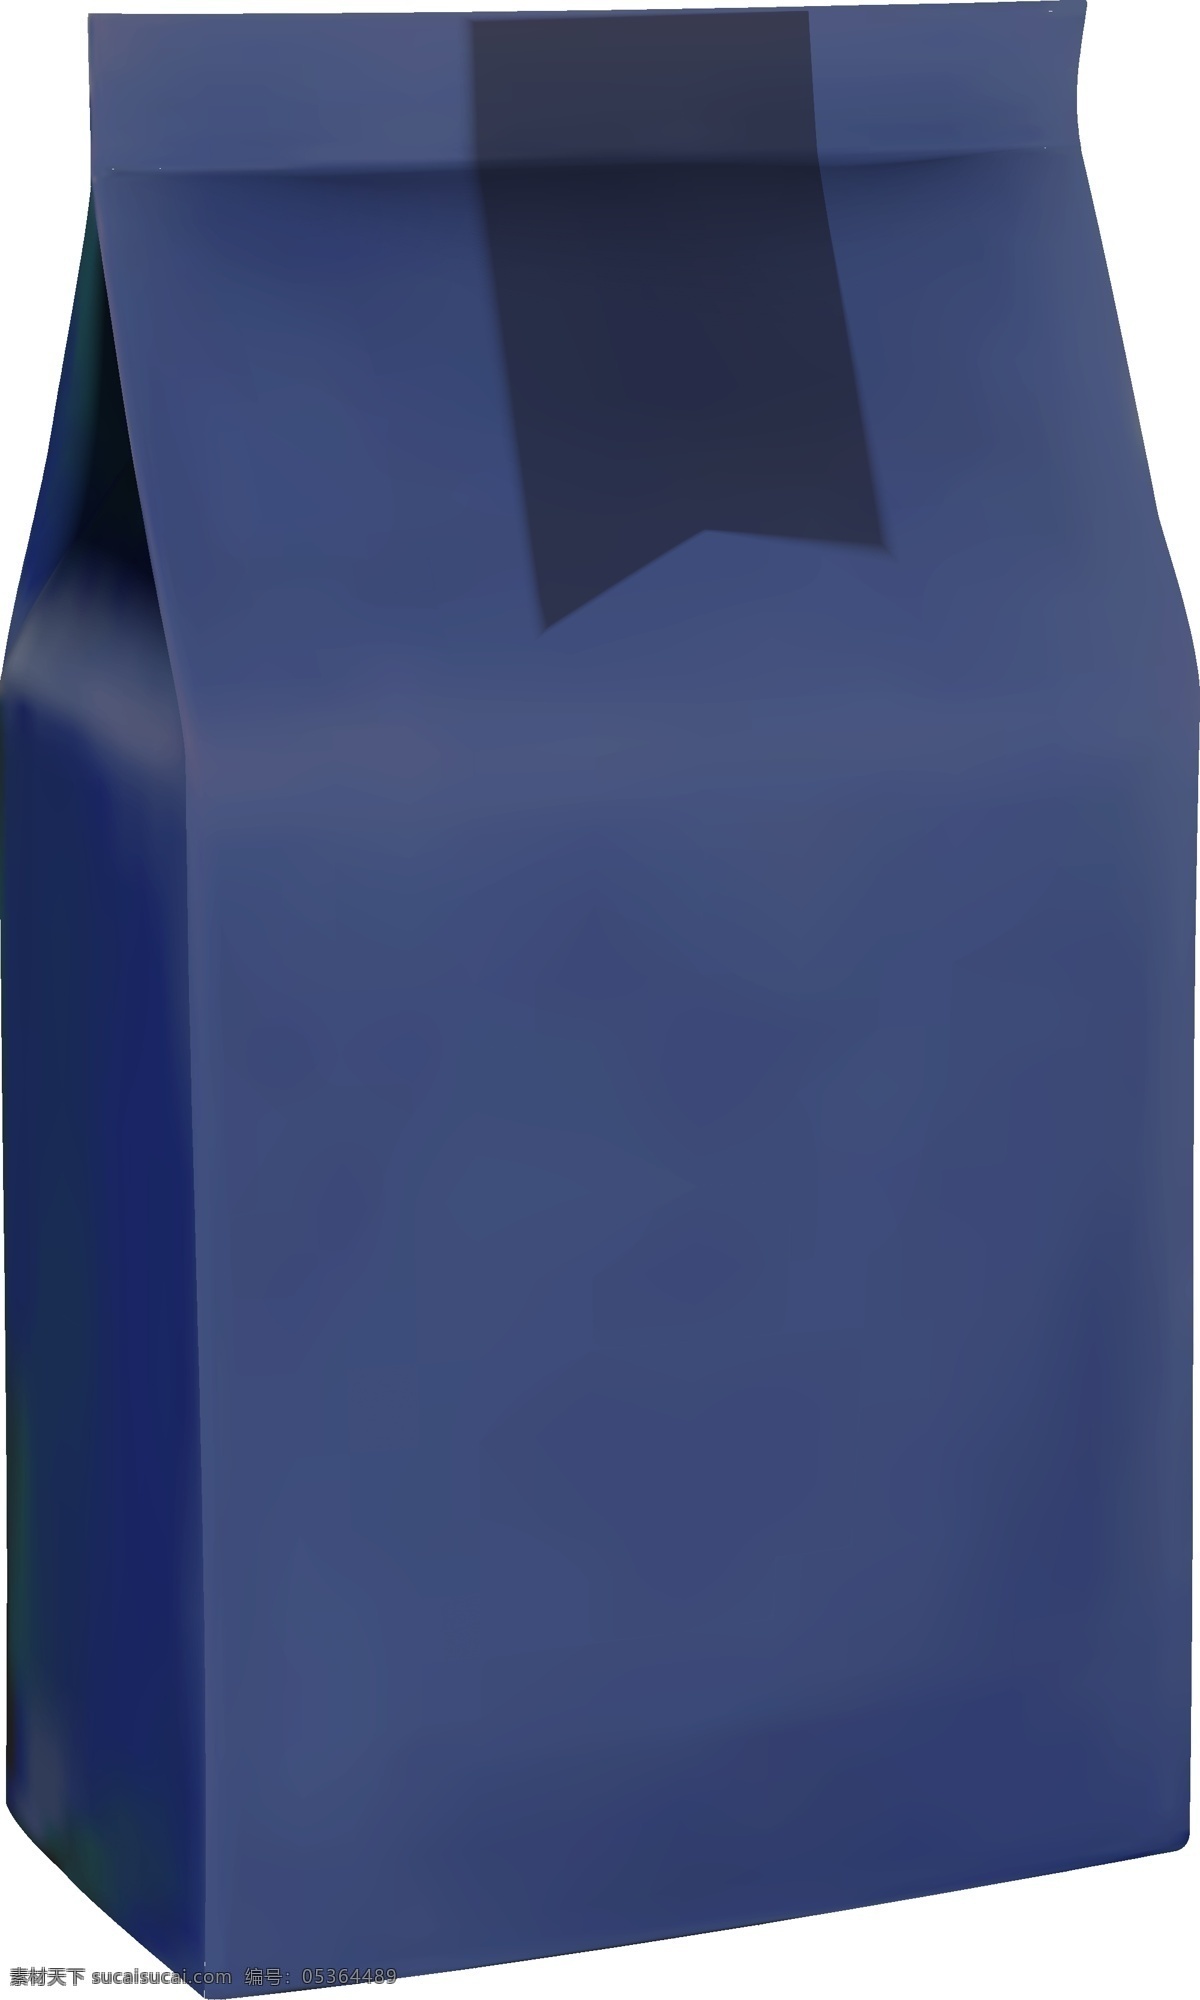 蓝色 纸袋 包装 样机 ai元素 免抠元素 广告样机素材 效果图 食品包装袋